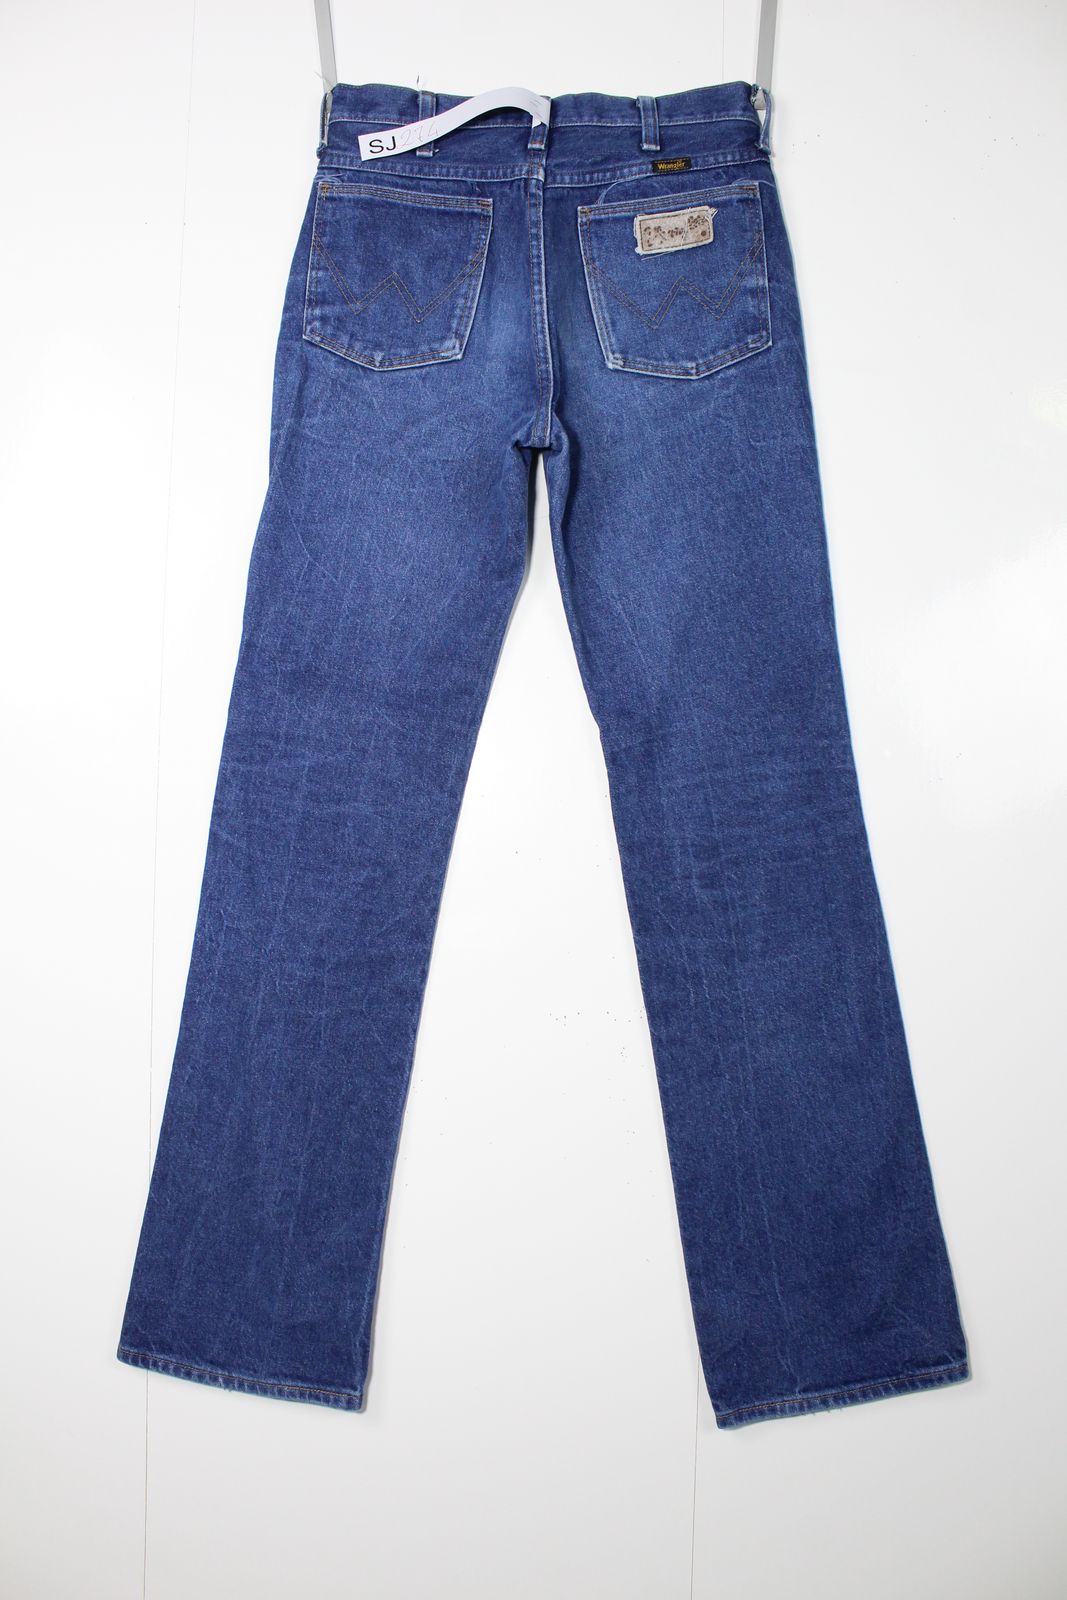 Wrangler vita alta Denim W30 L33 Made In USA Jeans Vintage